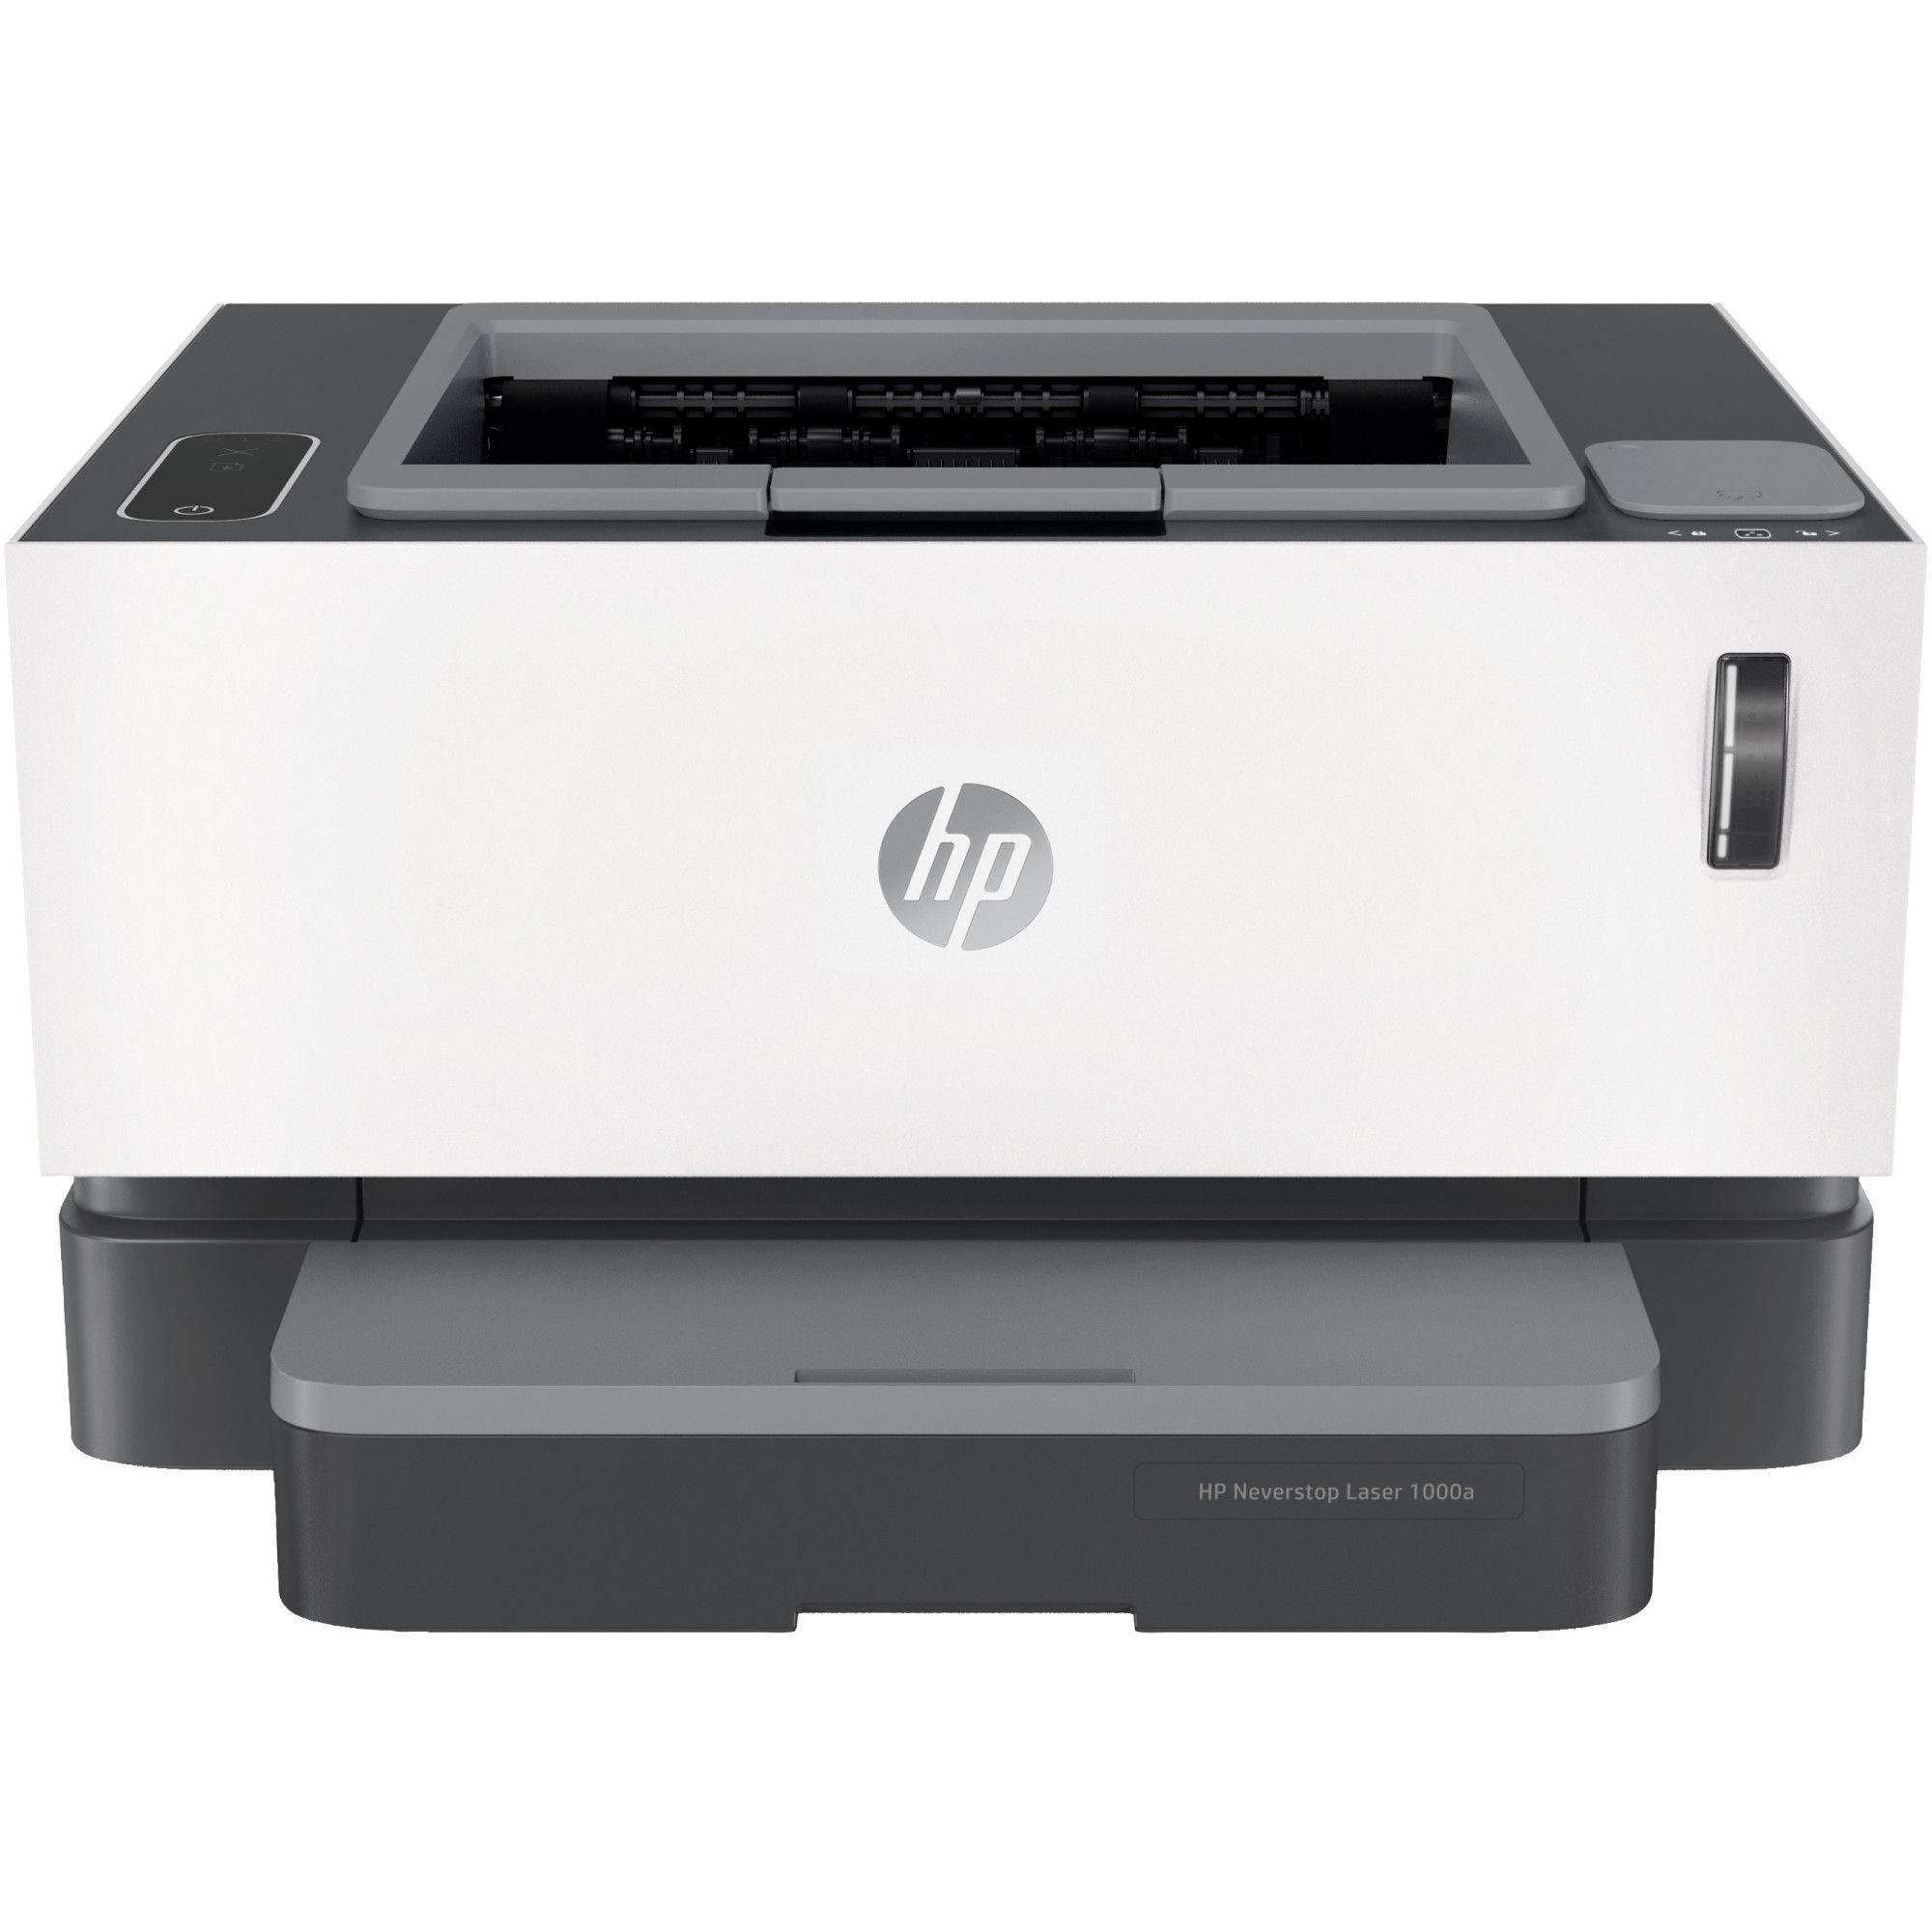 Imprimante HP LaserJet M111a, Monochrome, 21 ppm, Impression recto verso  automatique